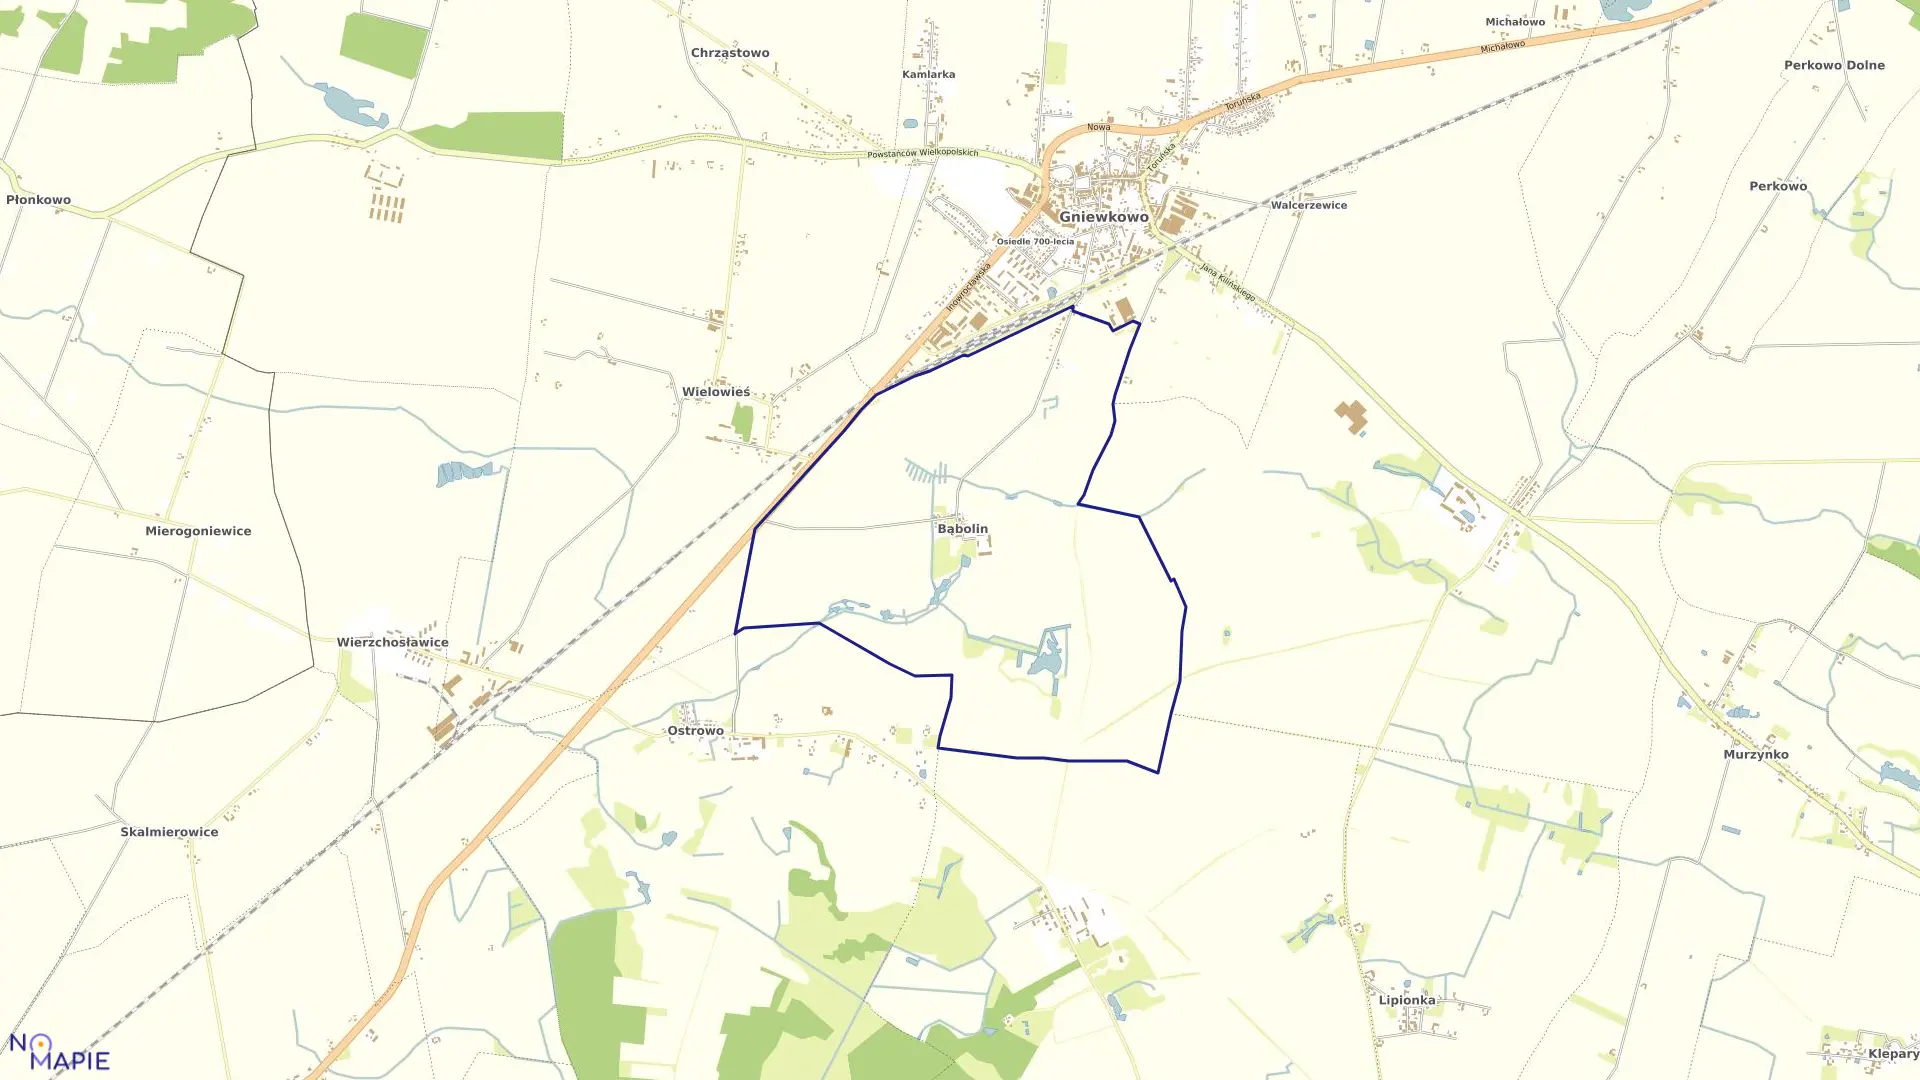 Mapa obrębu Bąbolin w gminie Gniewkowo